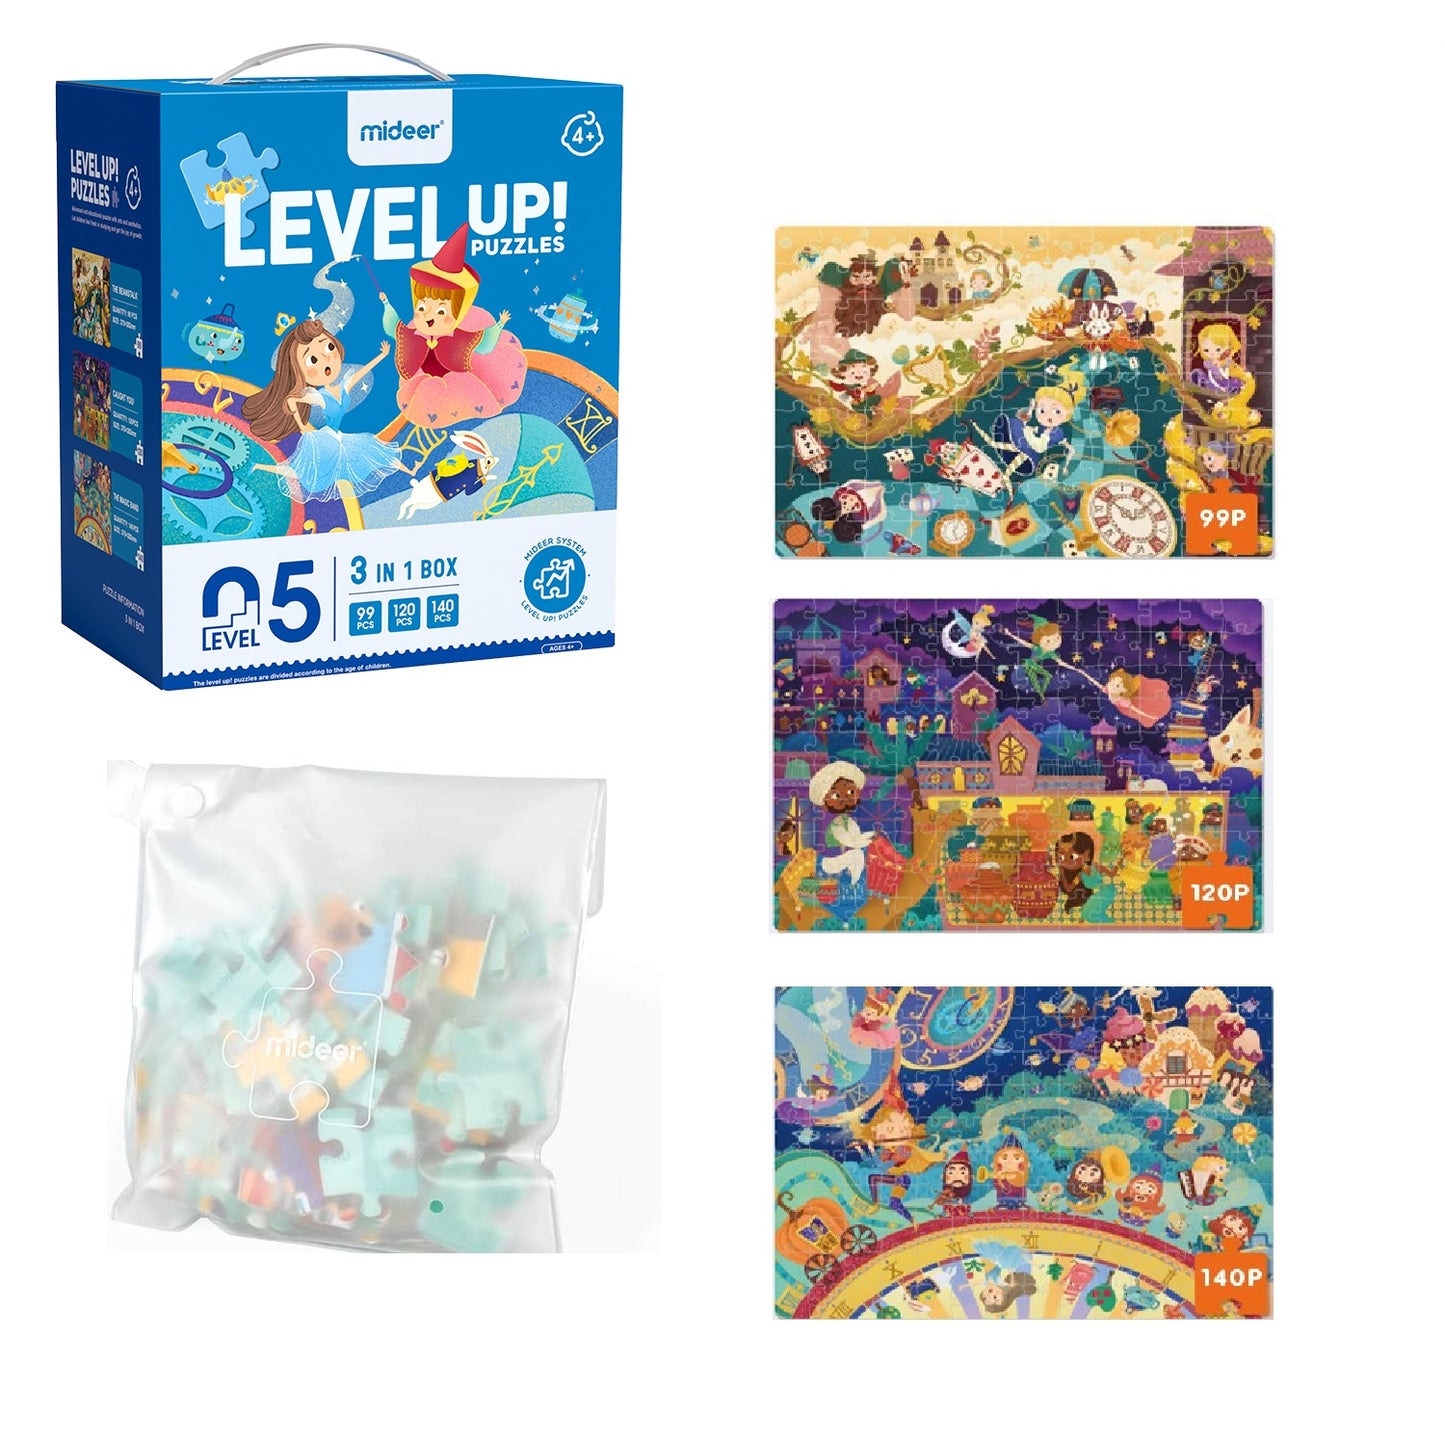 level-up-puzzle-nivel-5-mundo-de-cuentos-de-hadas-3-puzzles